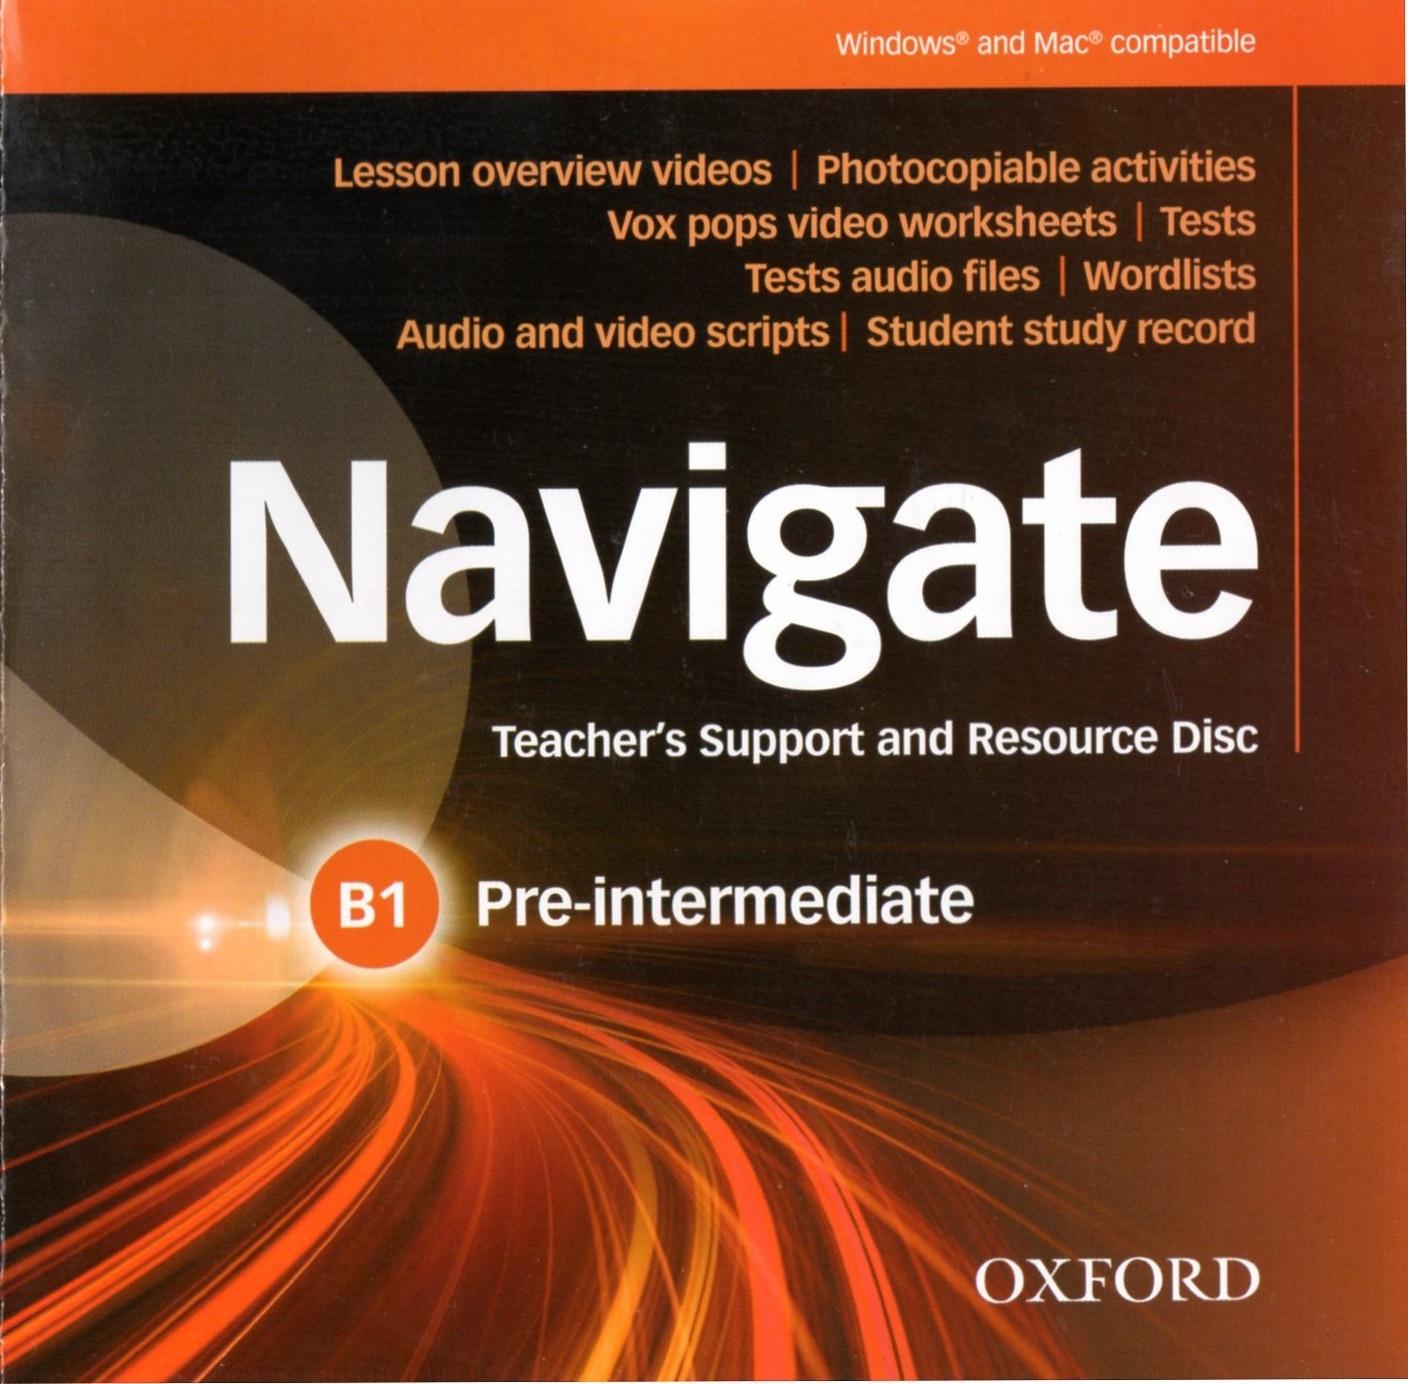 Navigate B1 Pre-intermediate: Teacher's Support and Resource Disc